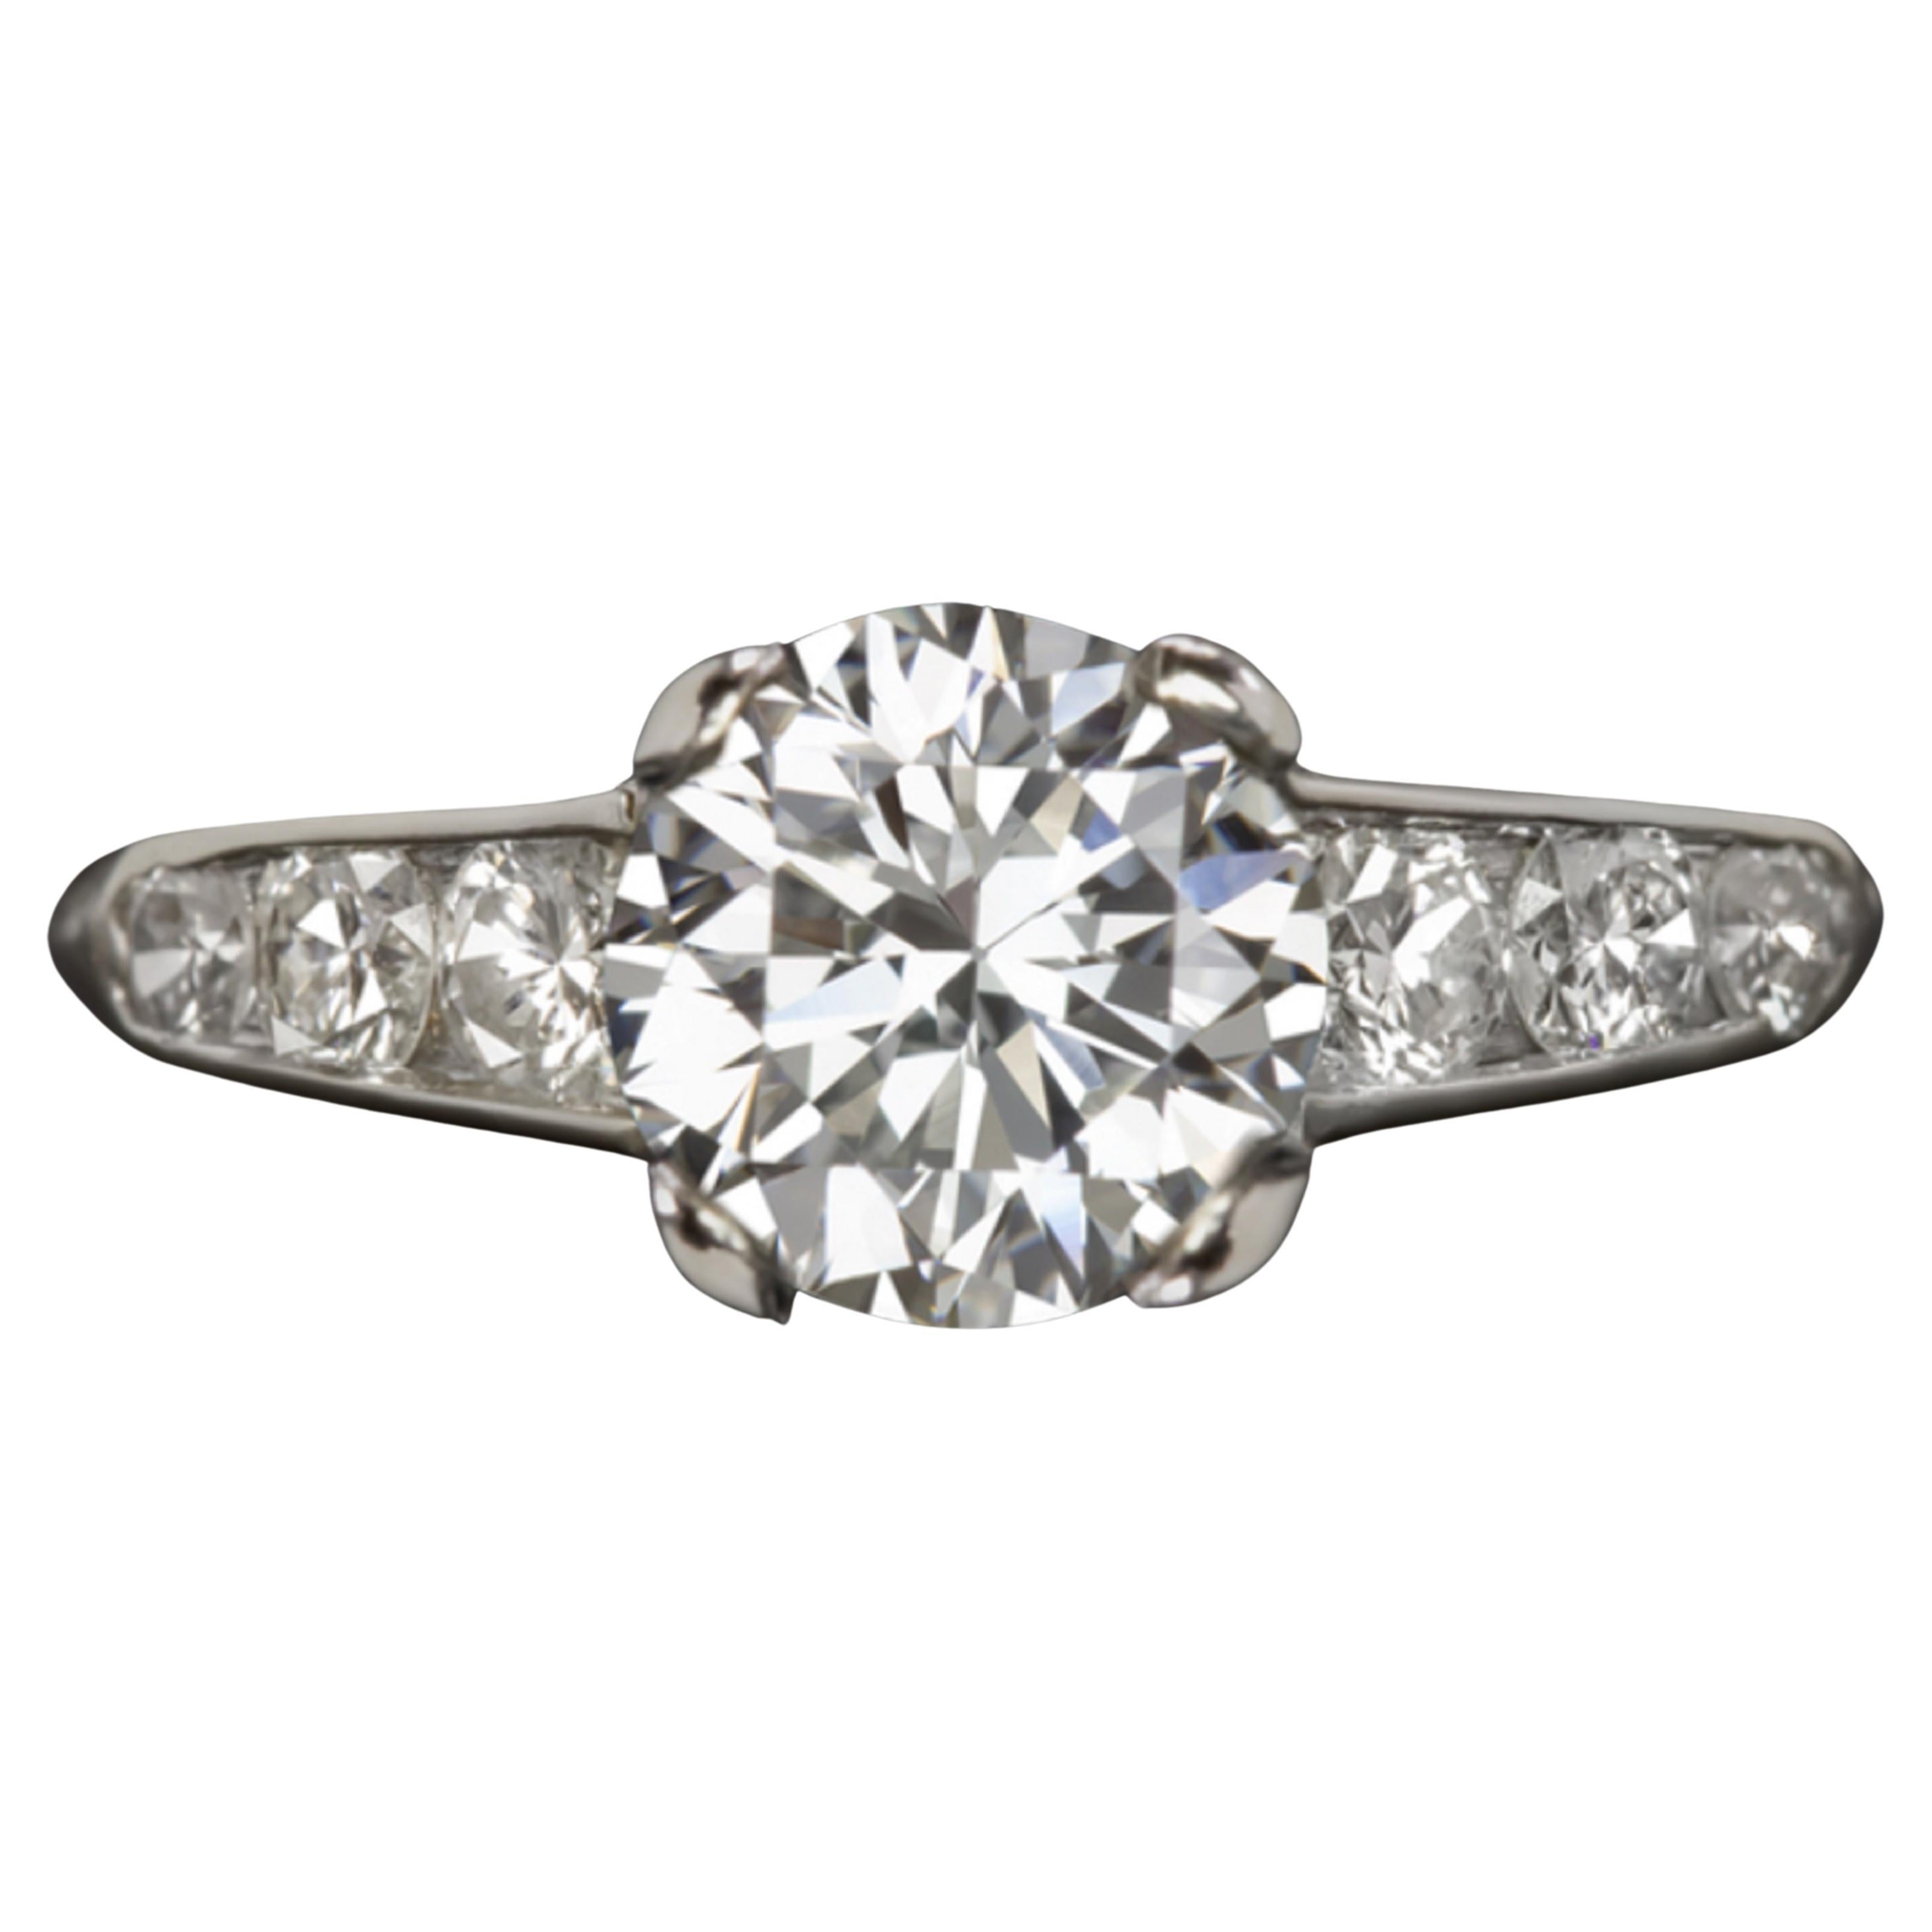 GIA Certified 1.41 Carat Round Brilliant Cut Diamond Platinum Ring